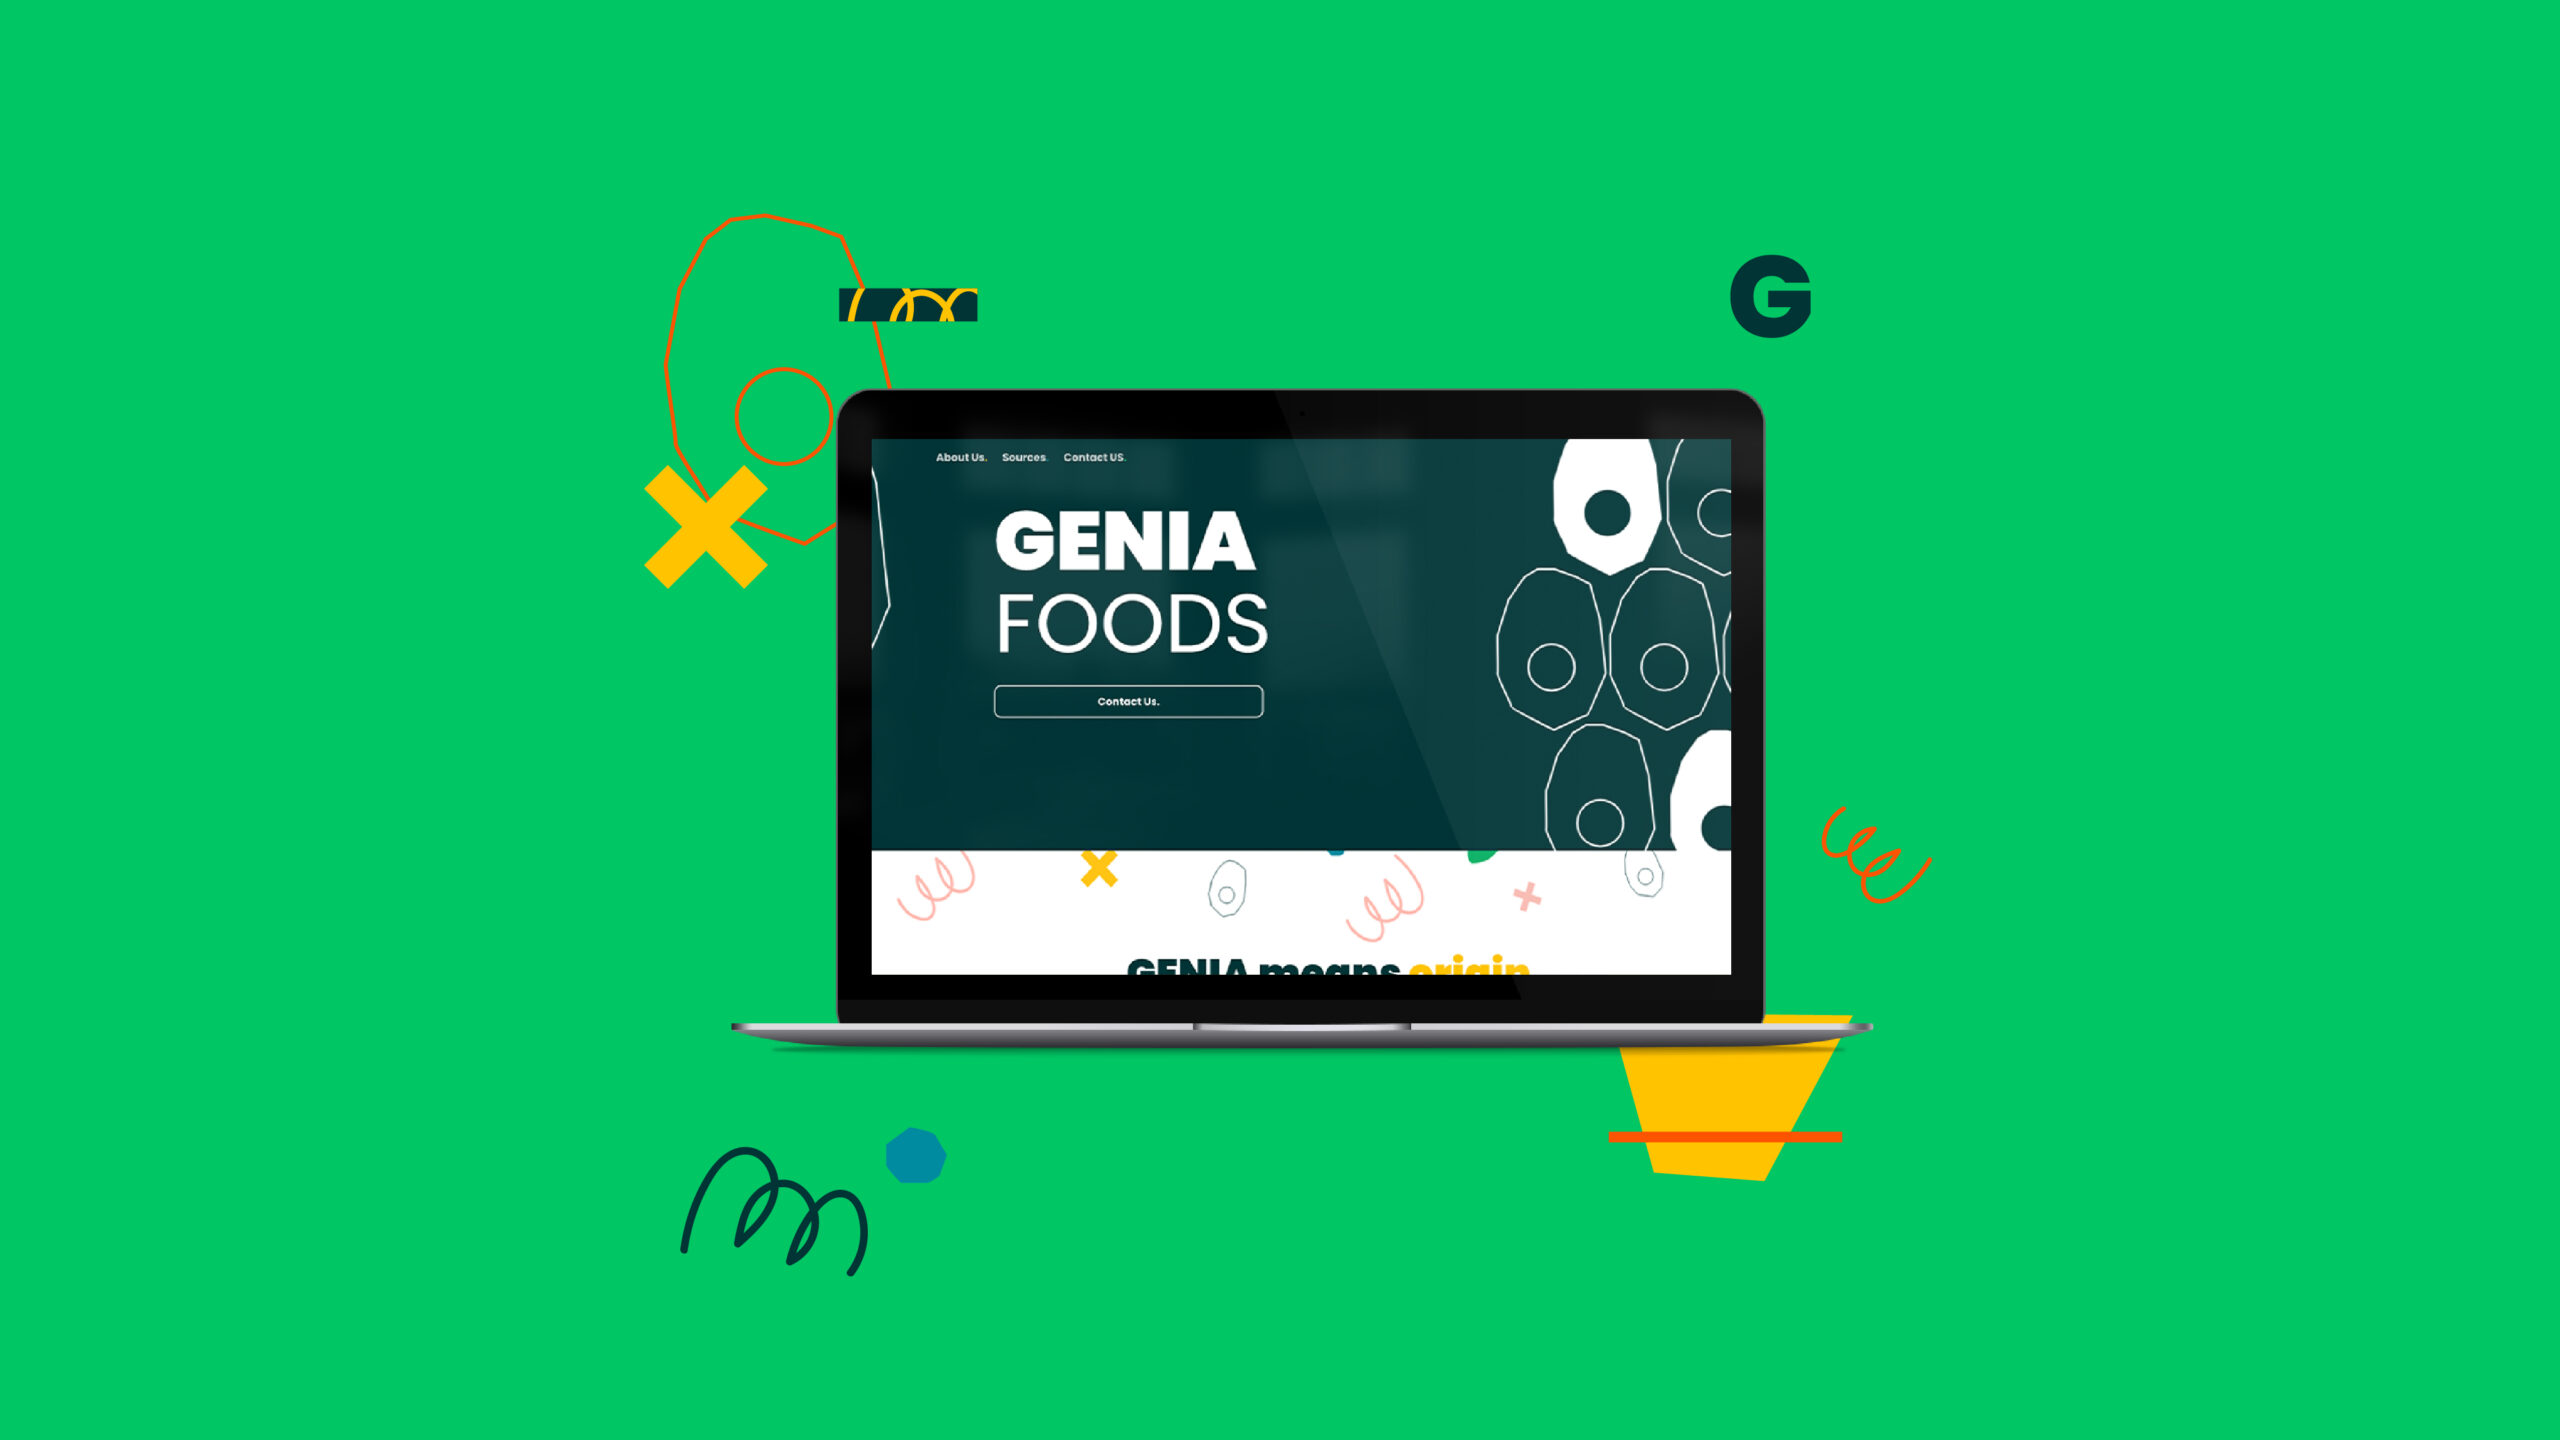 Magia_Genia Foods_Portfolio-16